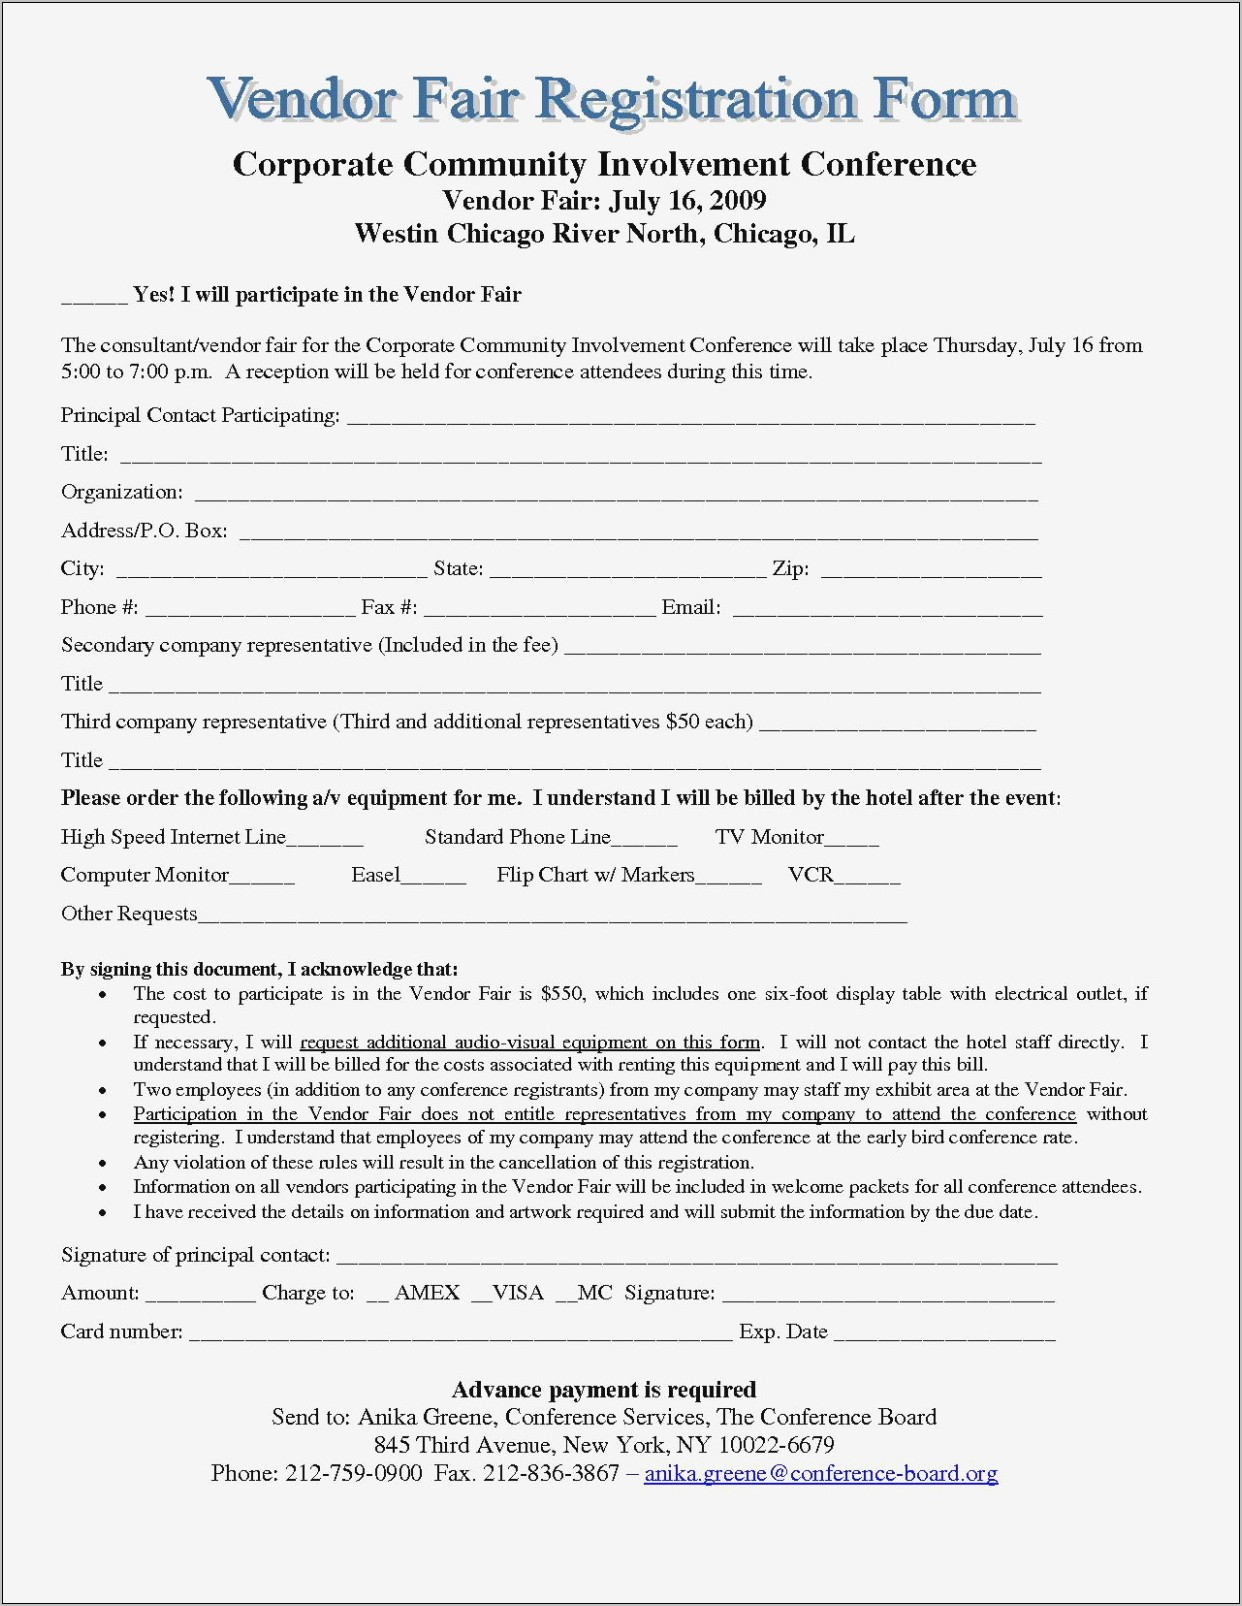 Sample Resume Basketball Registration Form Template